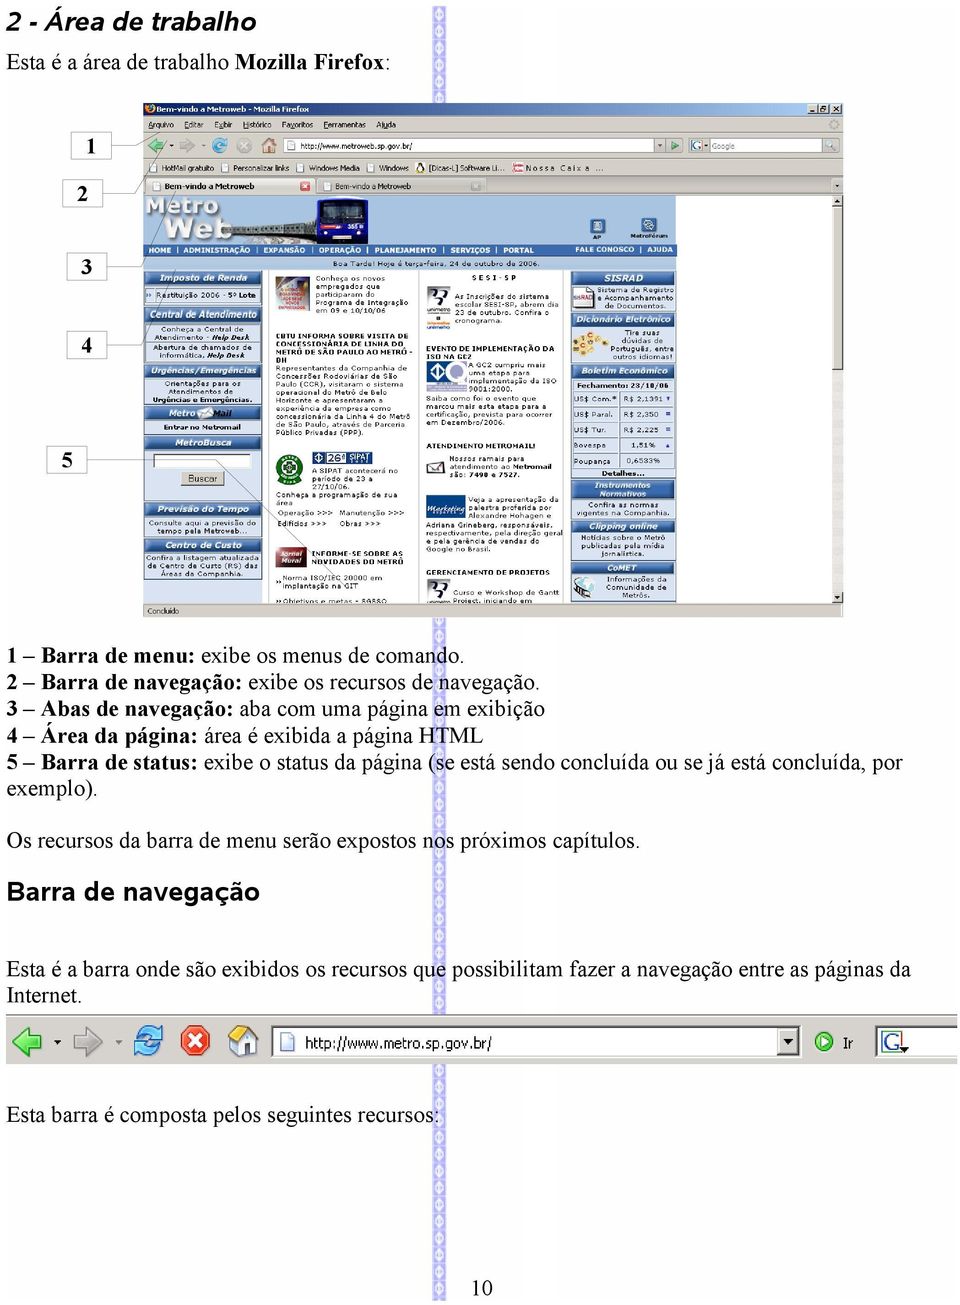 3 Abas de navegação: aba com uma página em exibição 4 Área da página: área é exibida a página HTML 5 Barra de status: exibe o status da página (se está